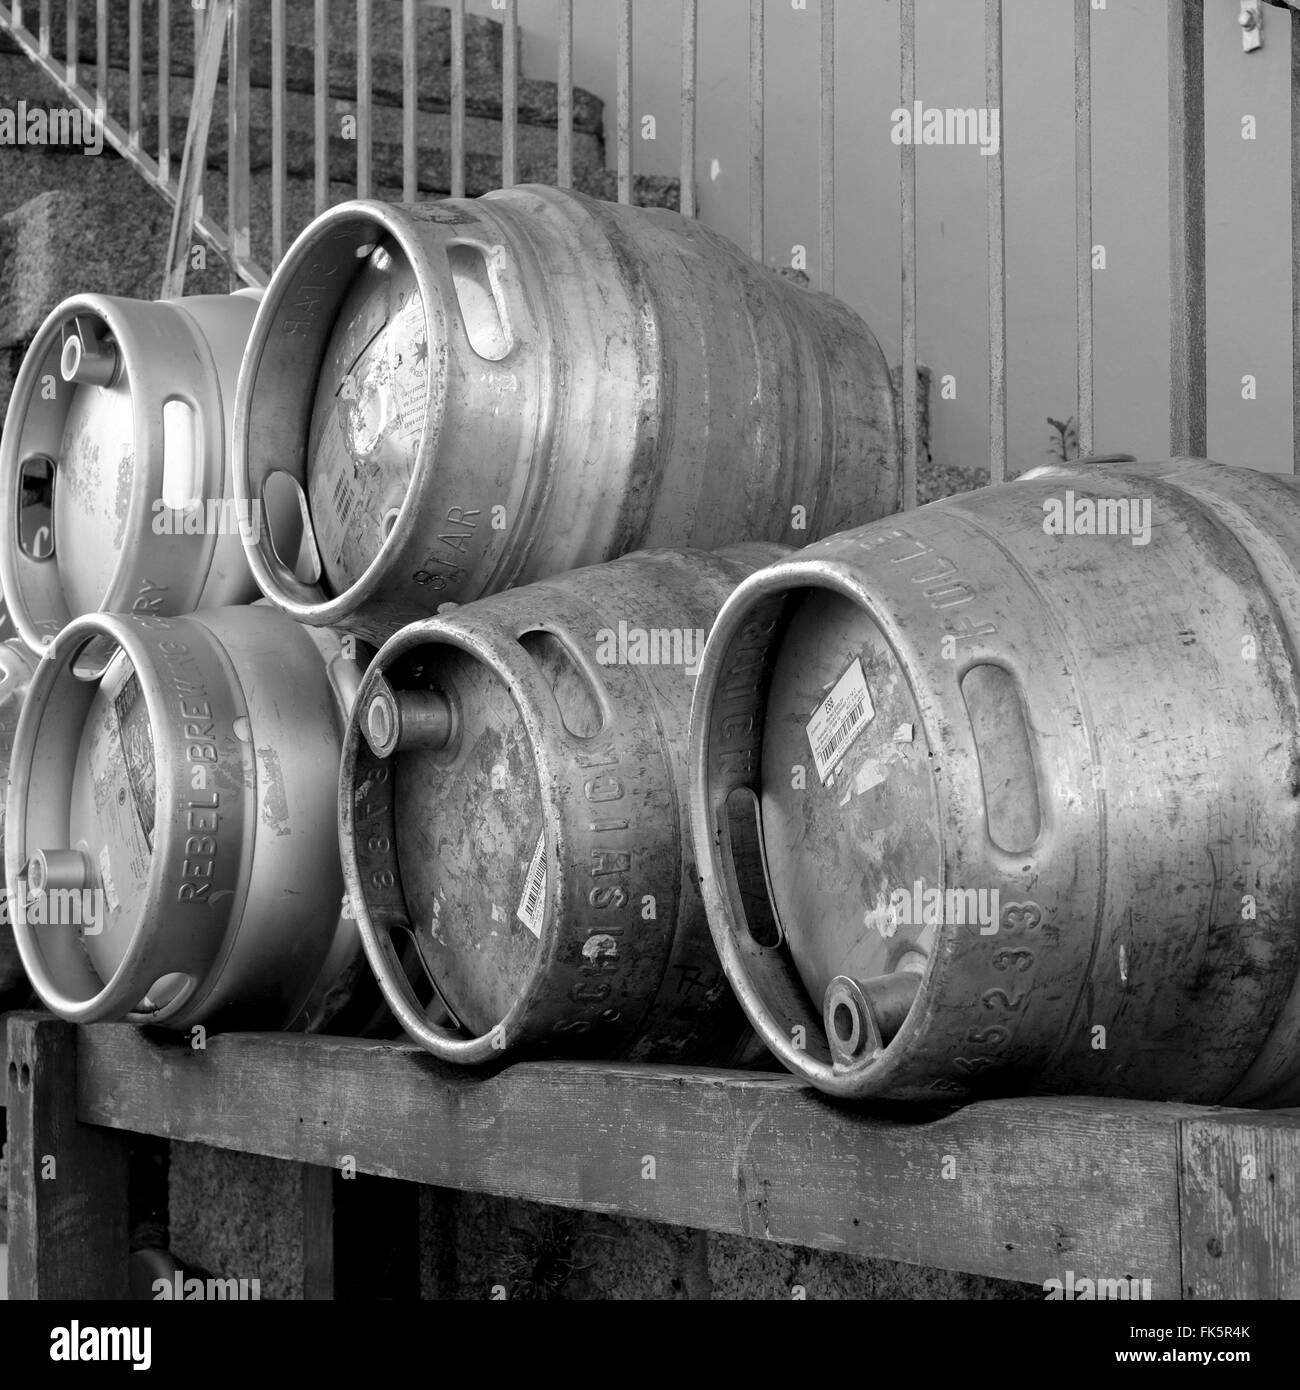 Stainless steel beer kegs Stock Photo